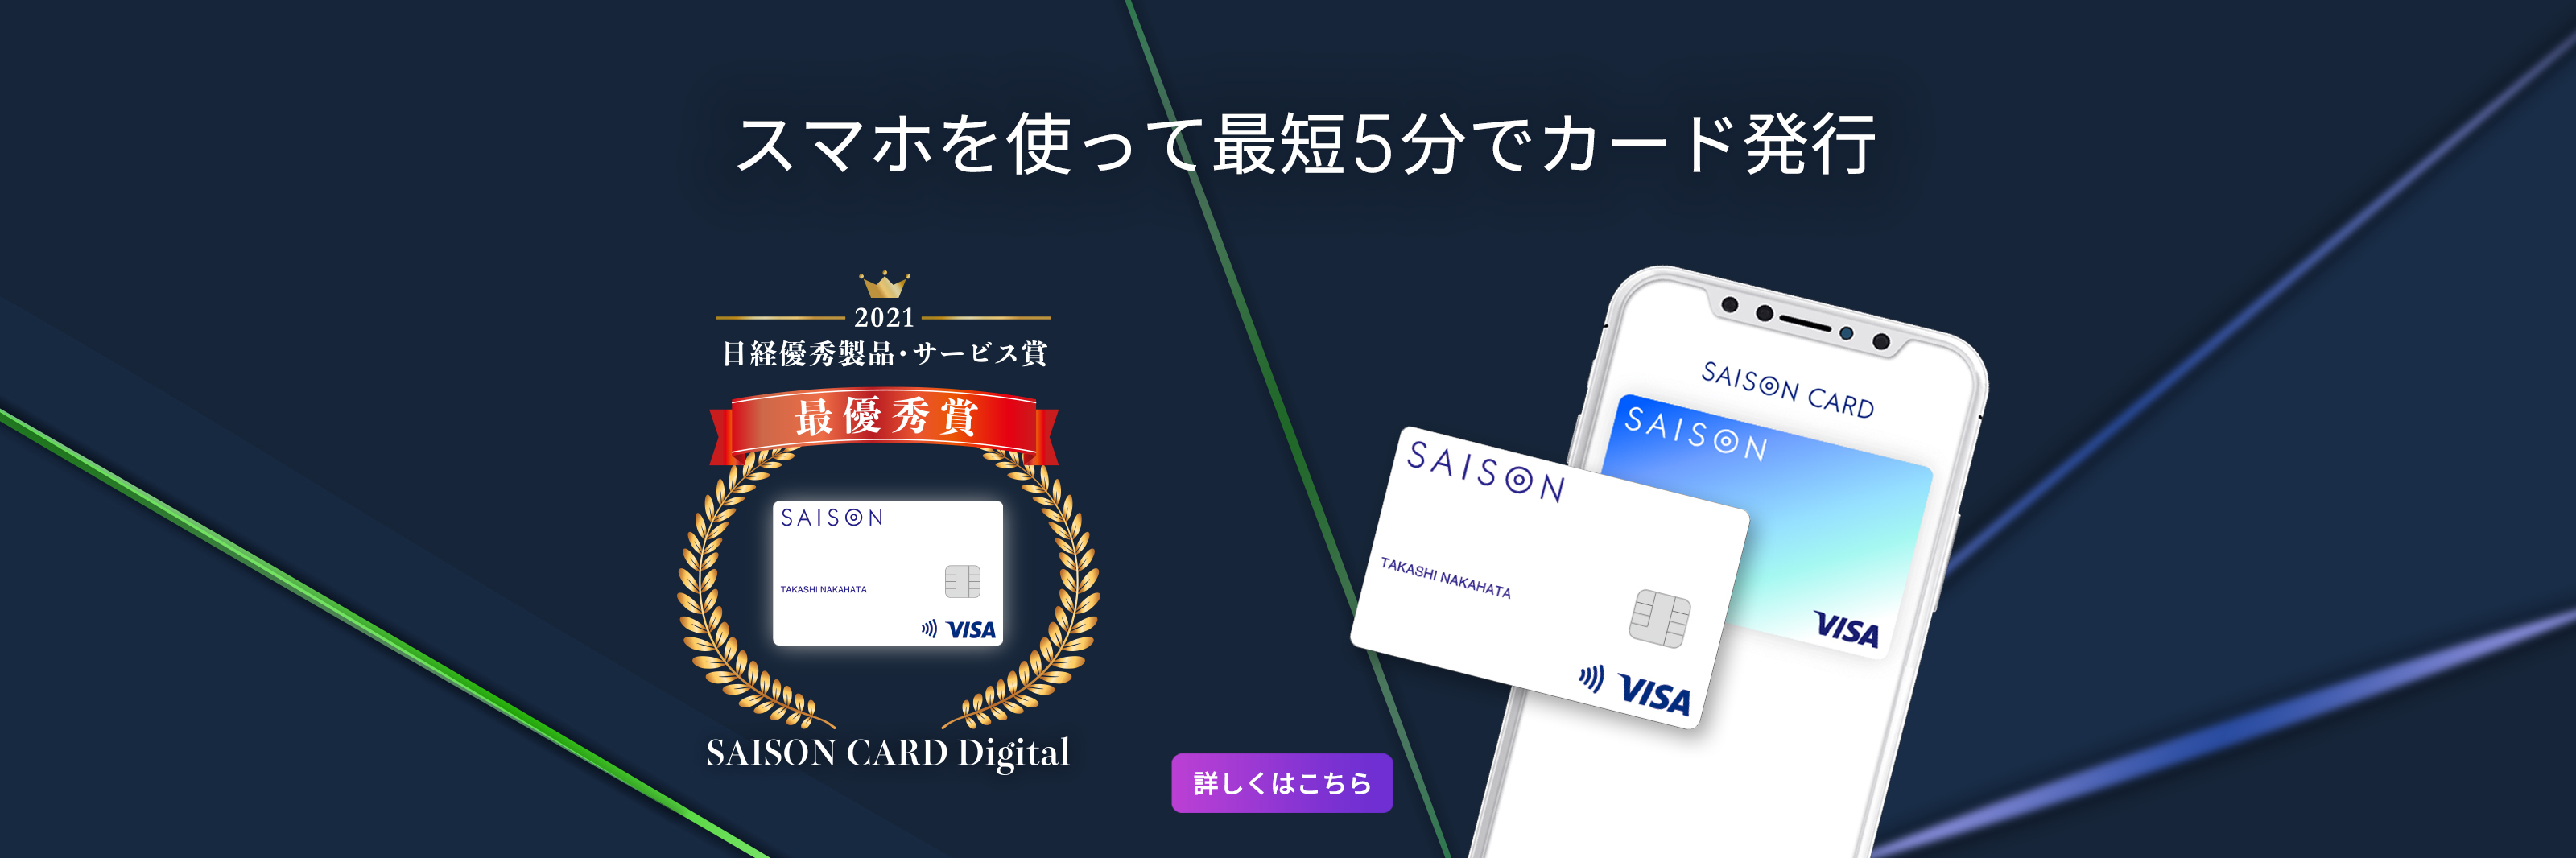 SAISON CARD Digital スマホを使って最短5分でカード発行